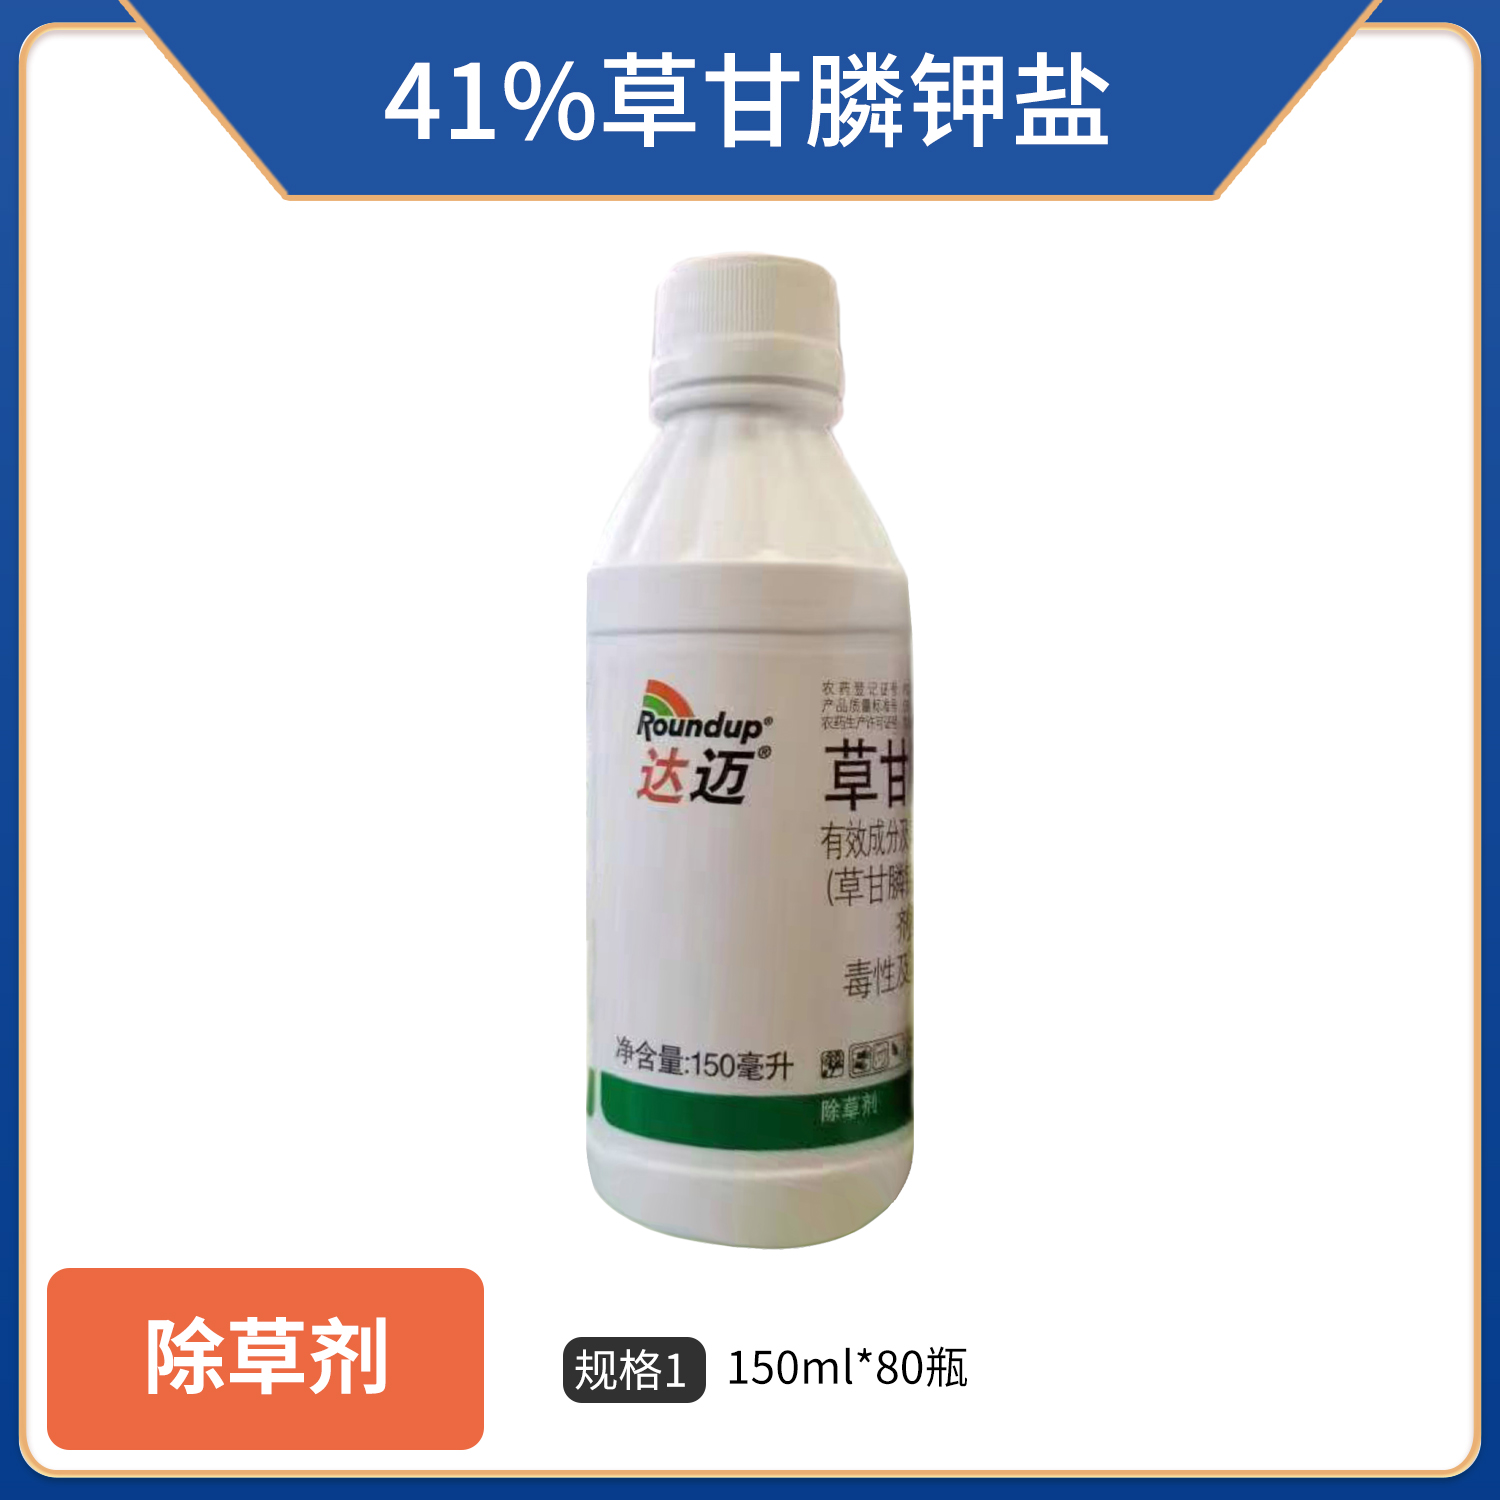 拜耳达迈-41%草甘膦钾盐-水剂